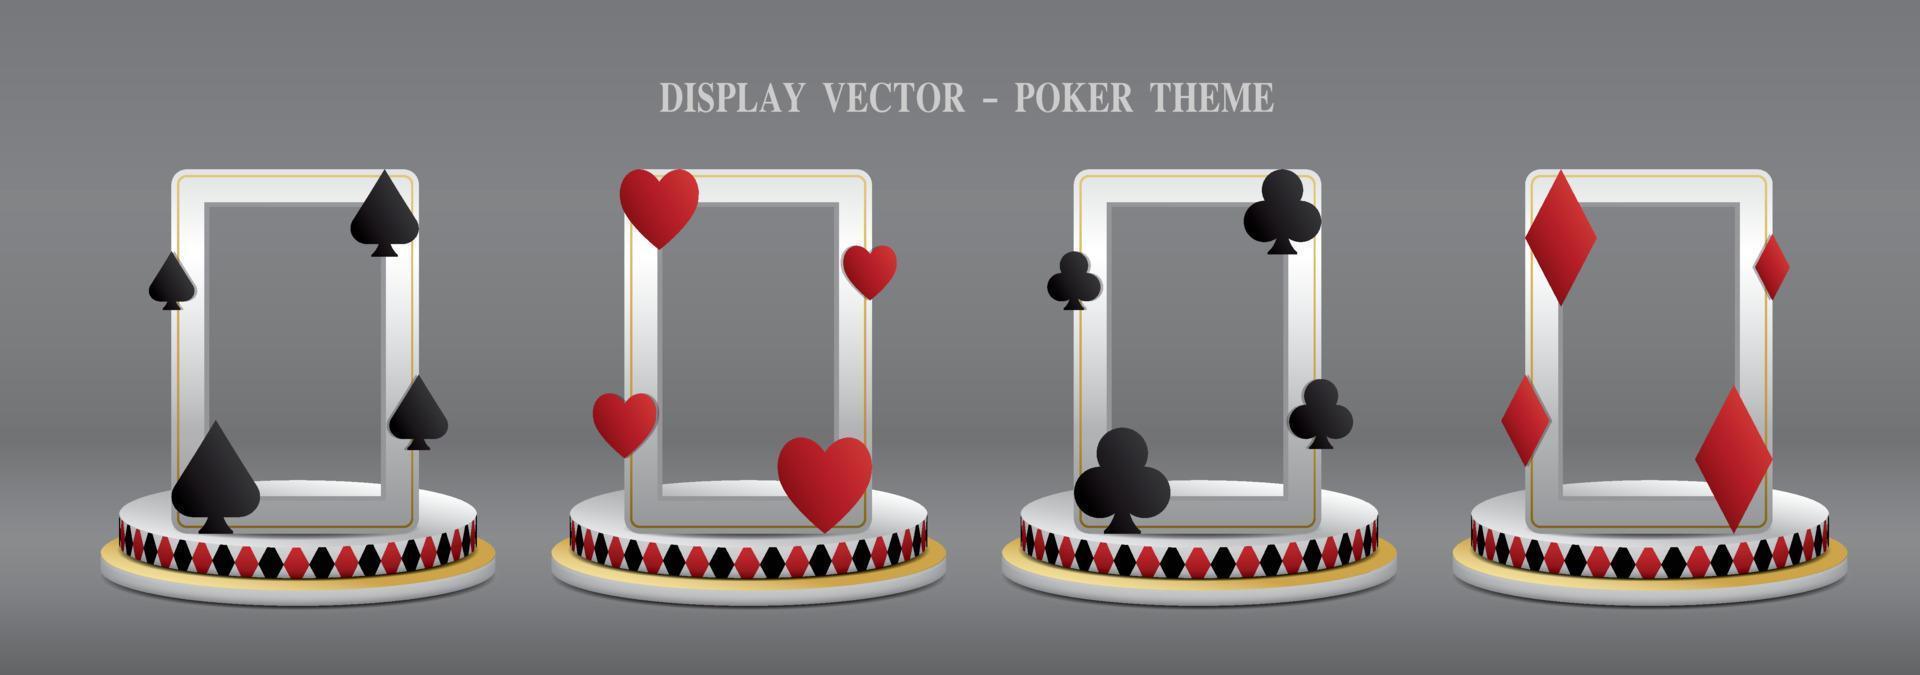 vettore di illustrazione 3d della fase di visualizzazione del tema del poker.